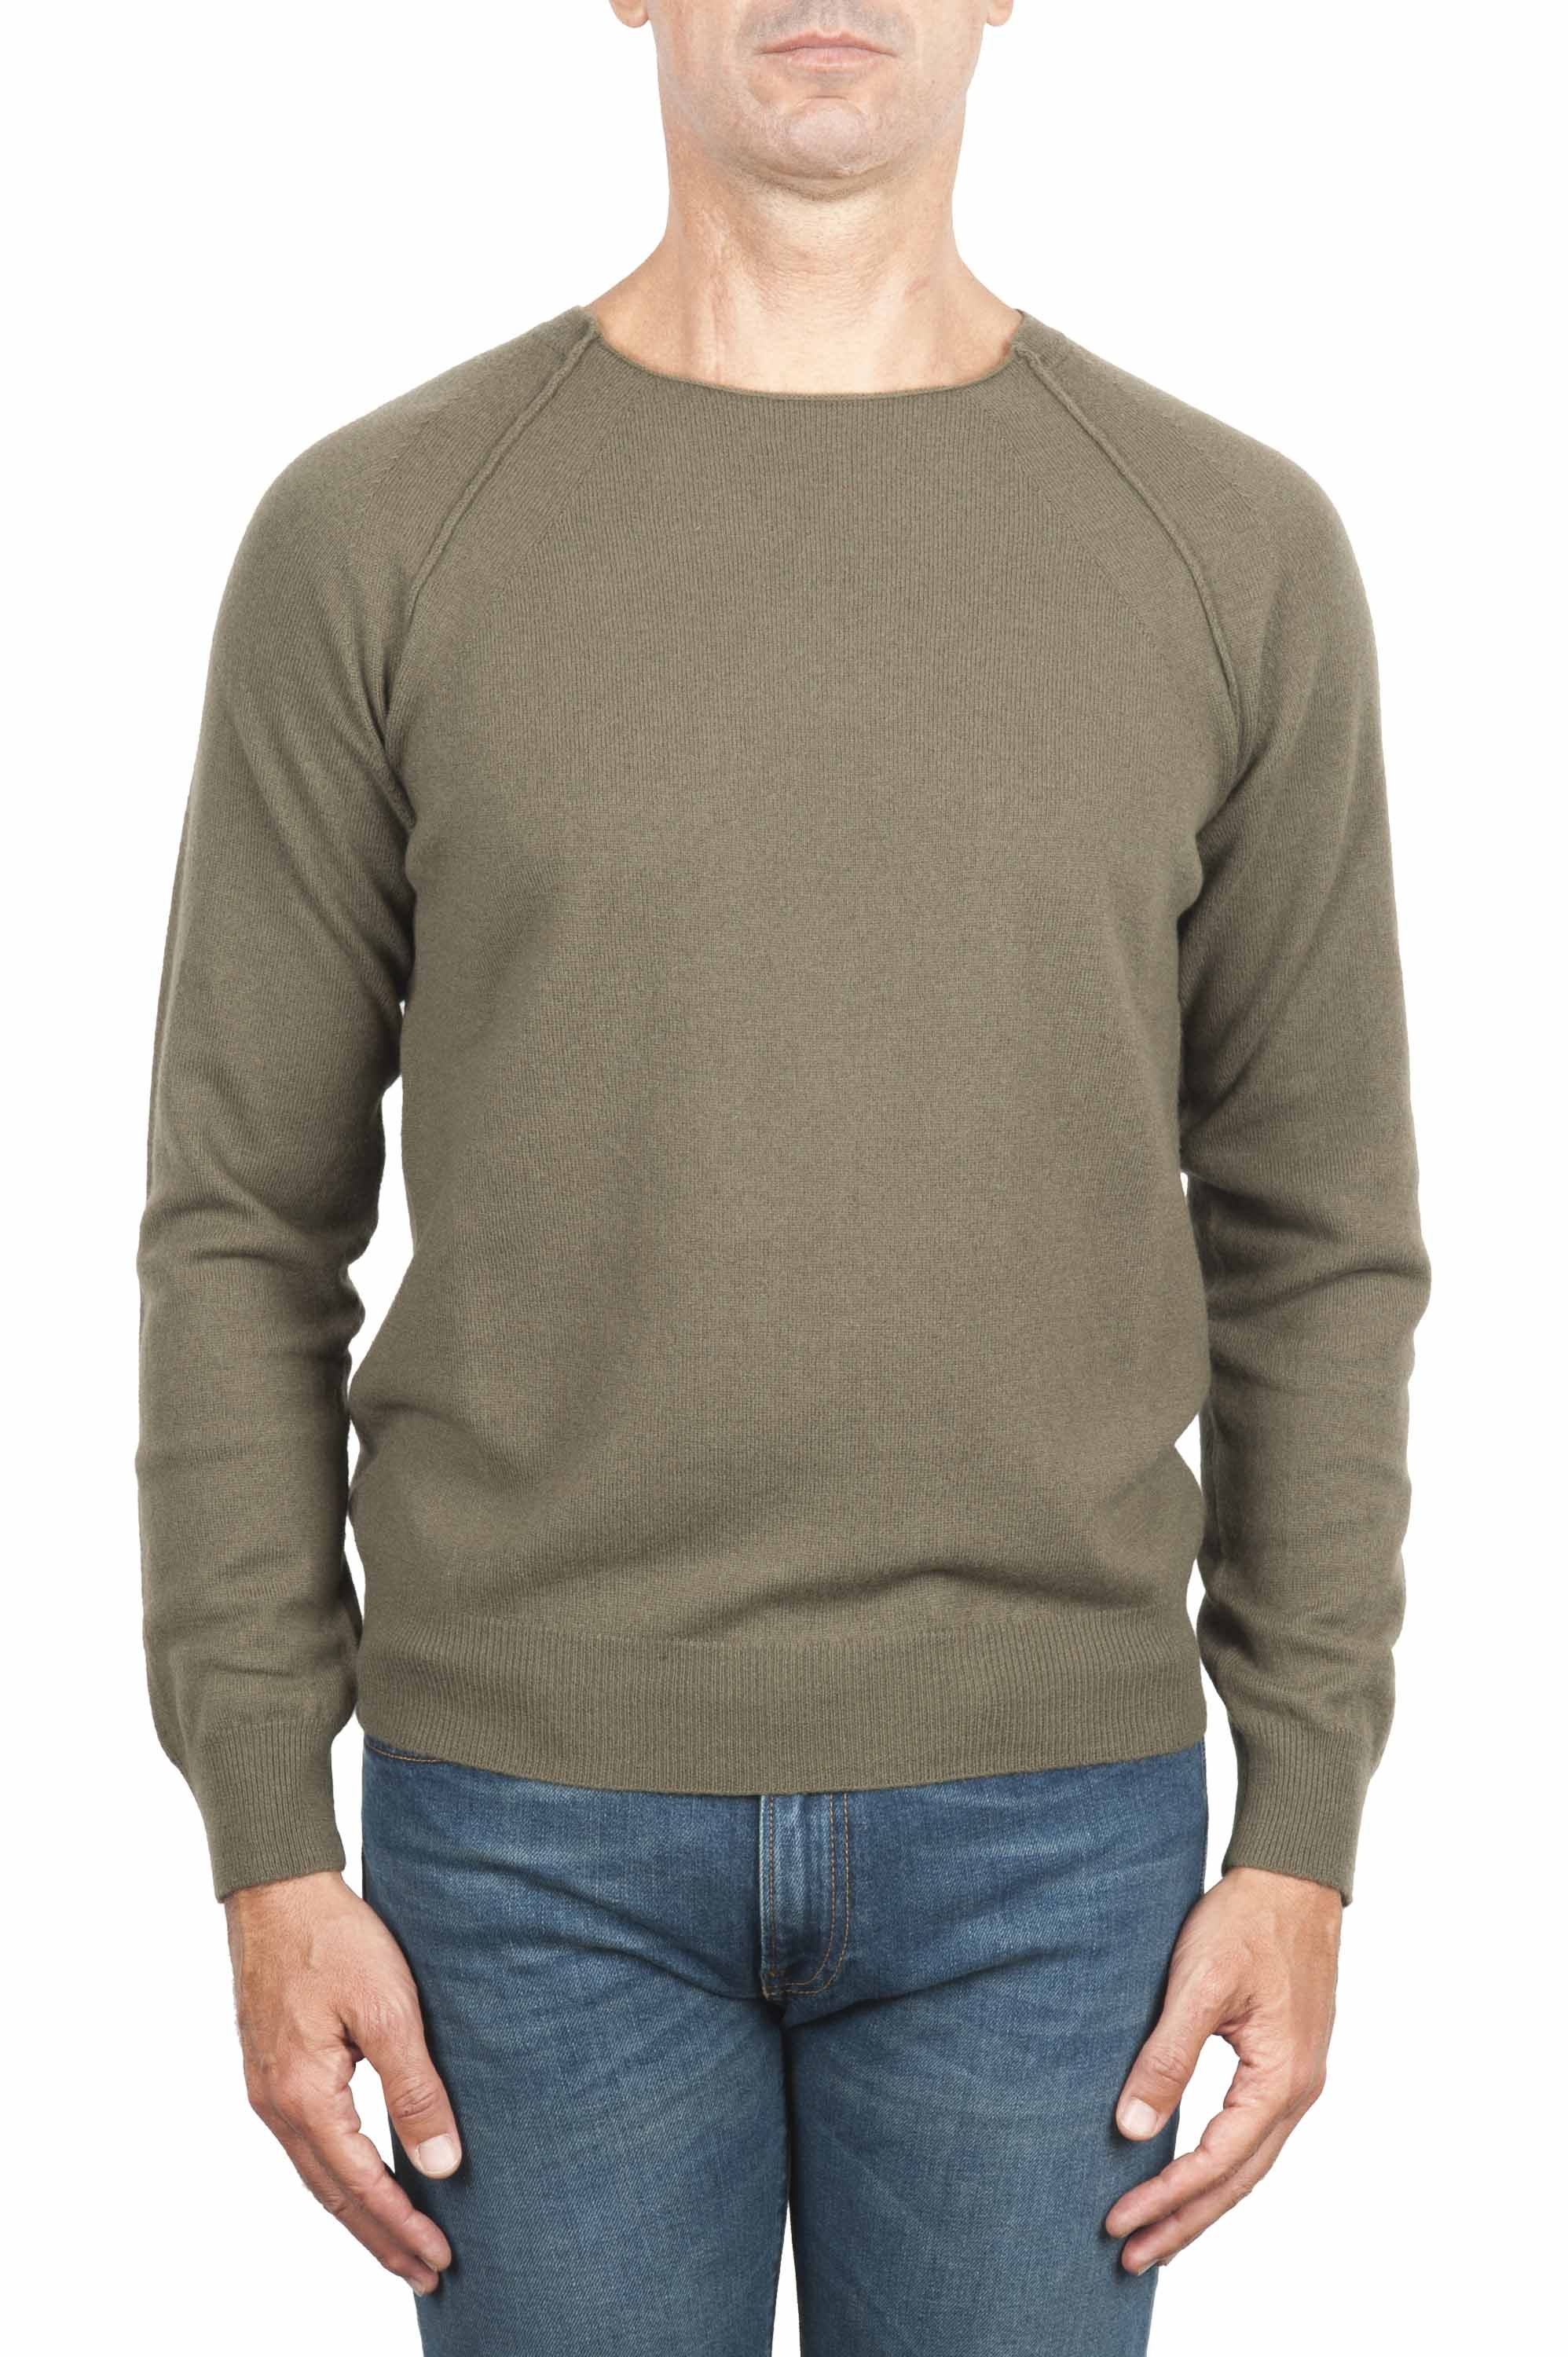 SBU 01497 Green round neck raw cut neckline and raglan sleeve sweater 01